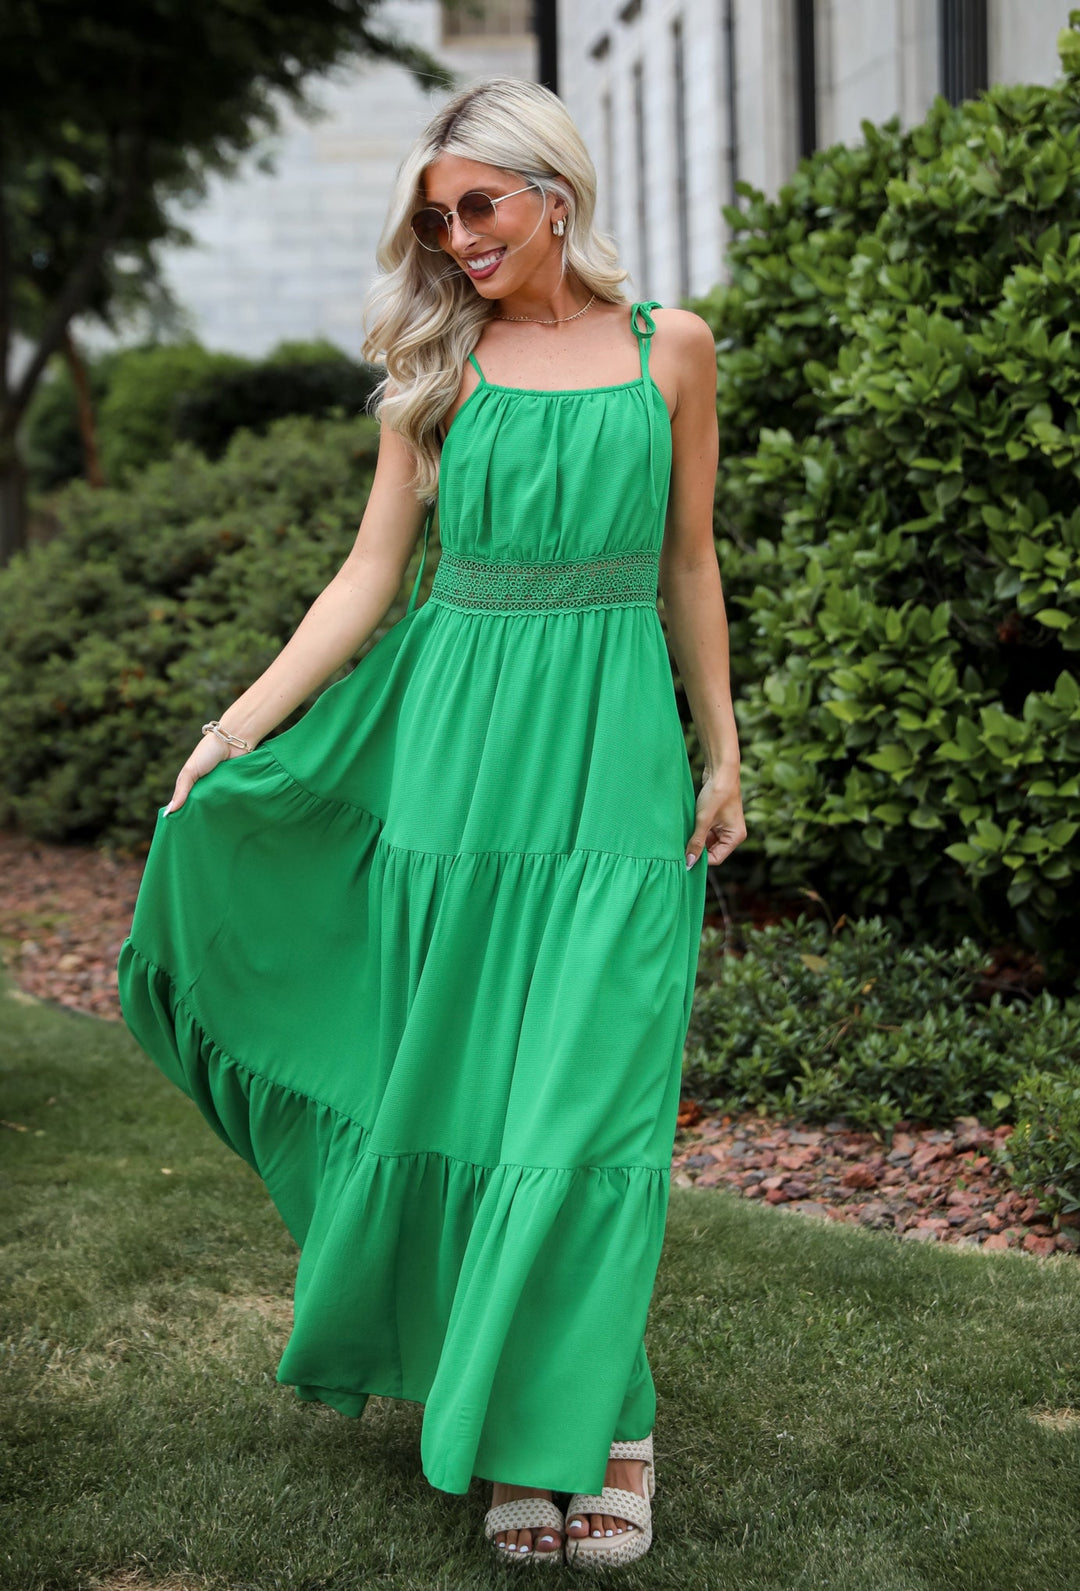 Green Tiered Maxi Dress